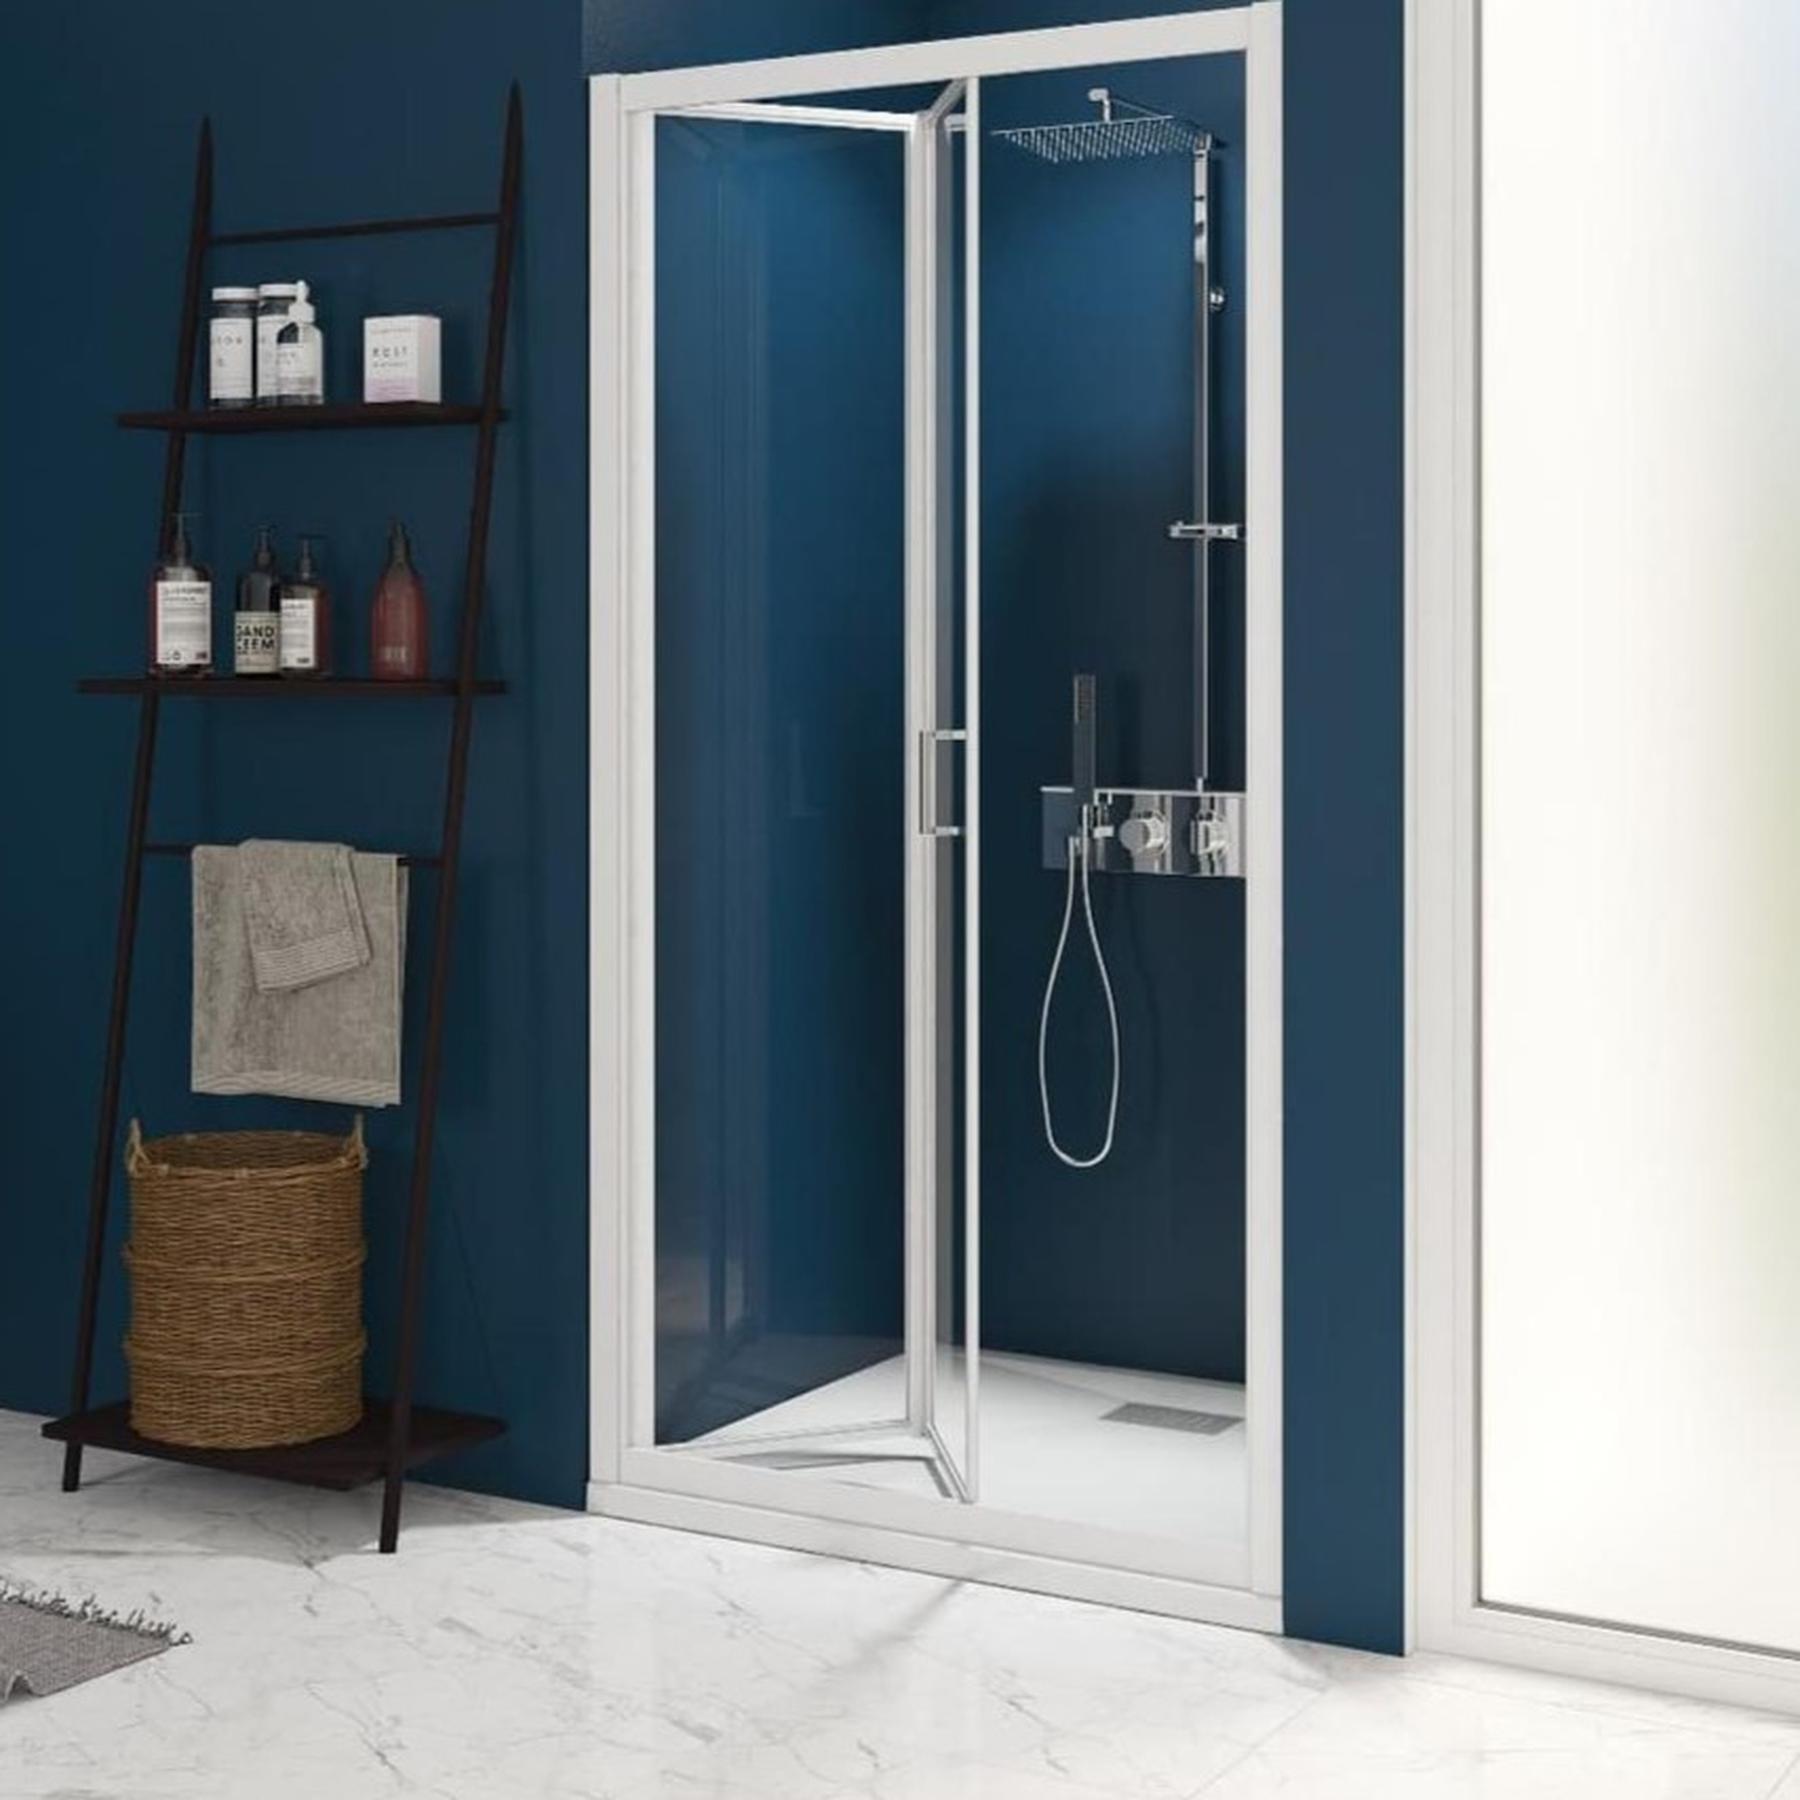 Porte de douche SMART Express S gain de place pliante vers l'intérieur largeur 1.00m profilé blanc verre transparent